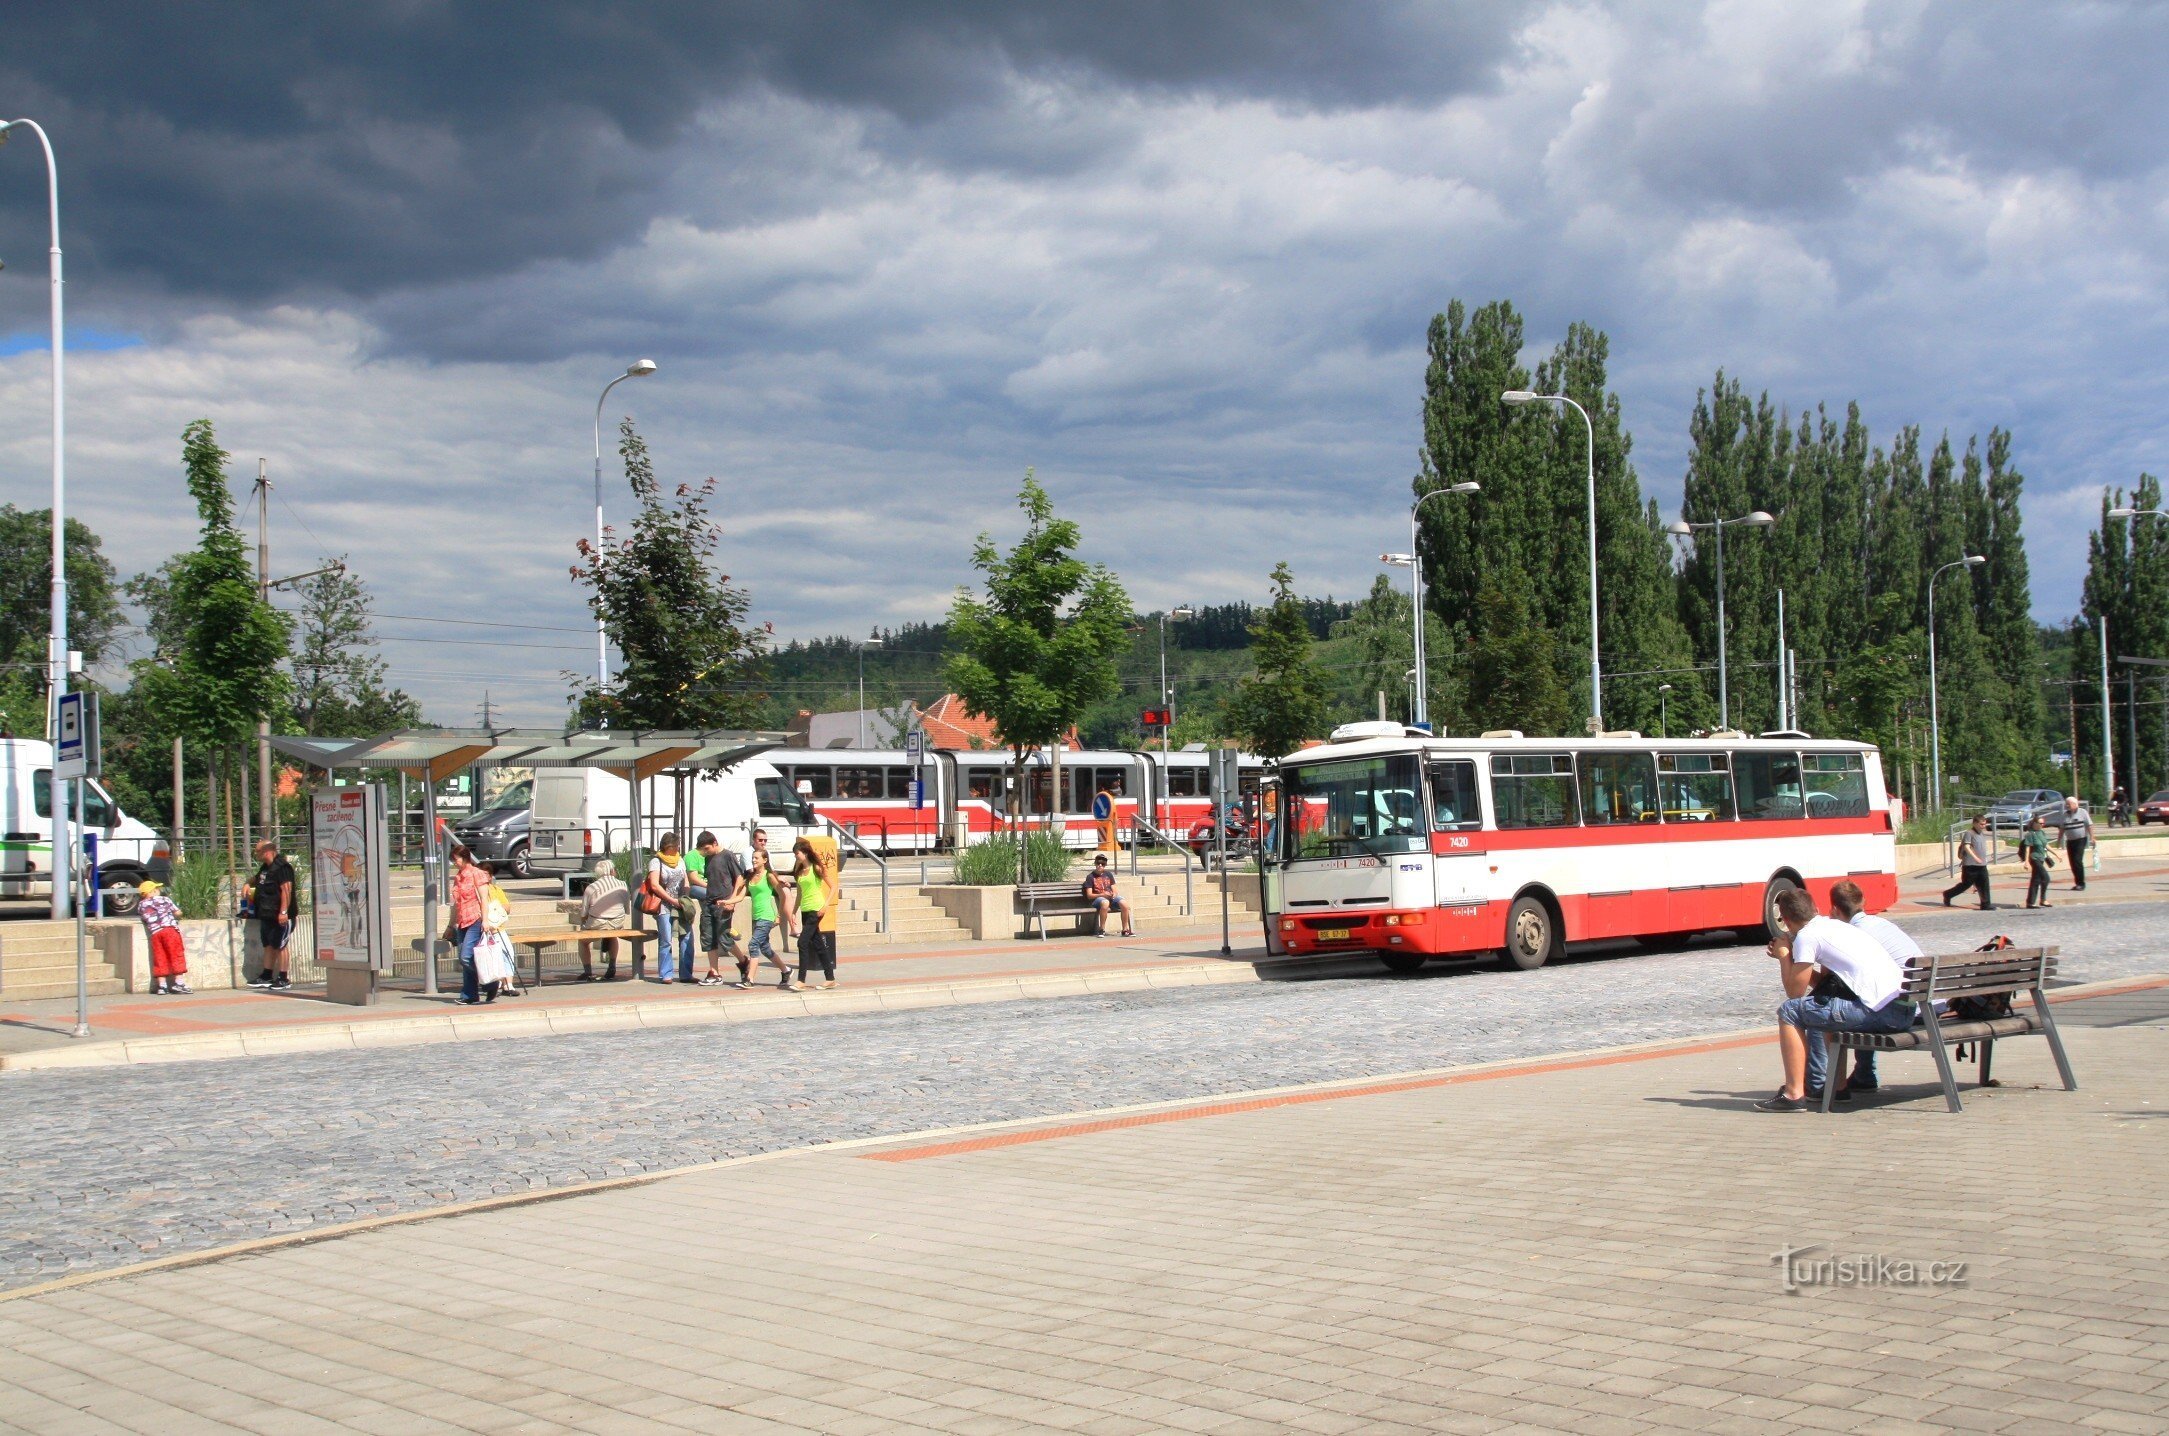 Bến giao thông công cộng Bystrica